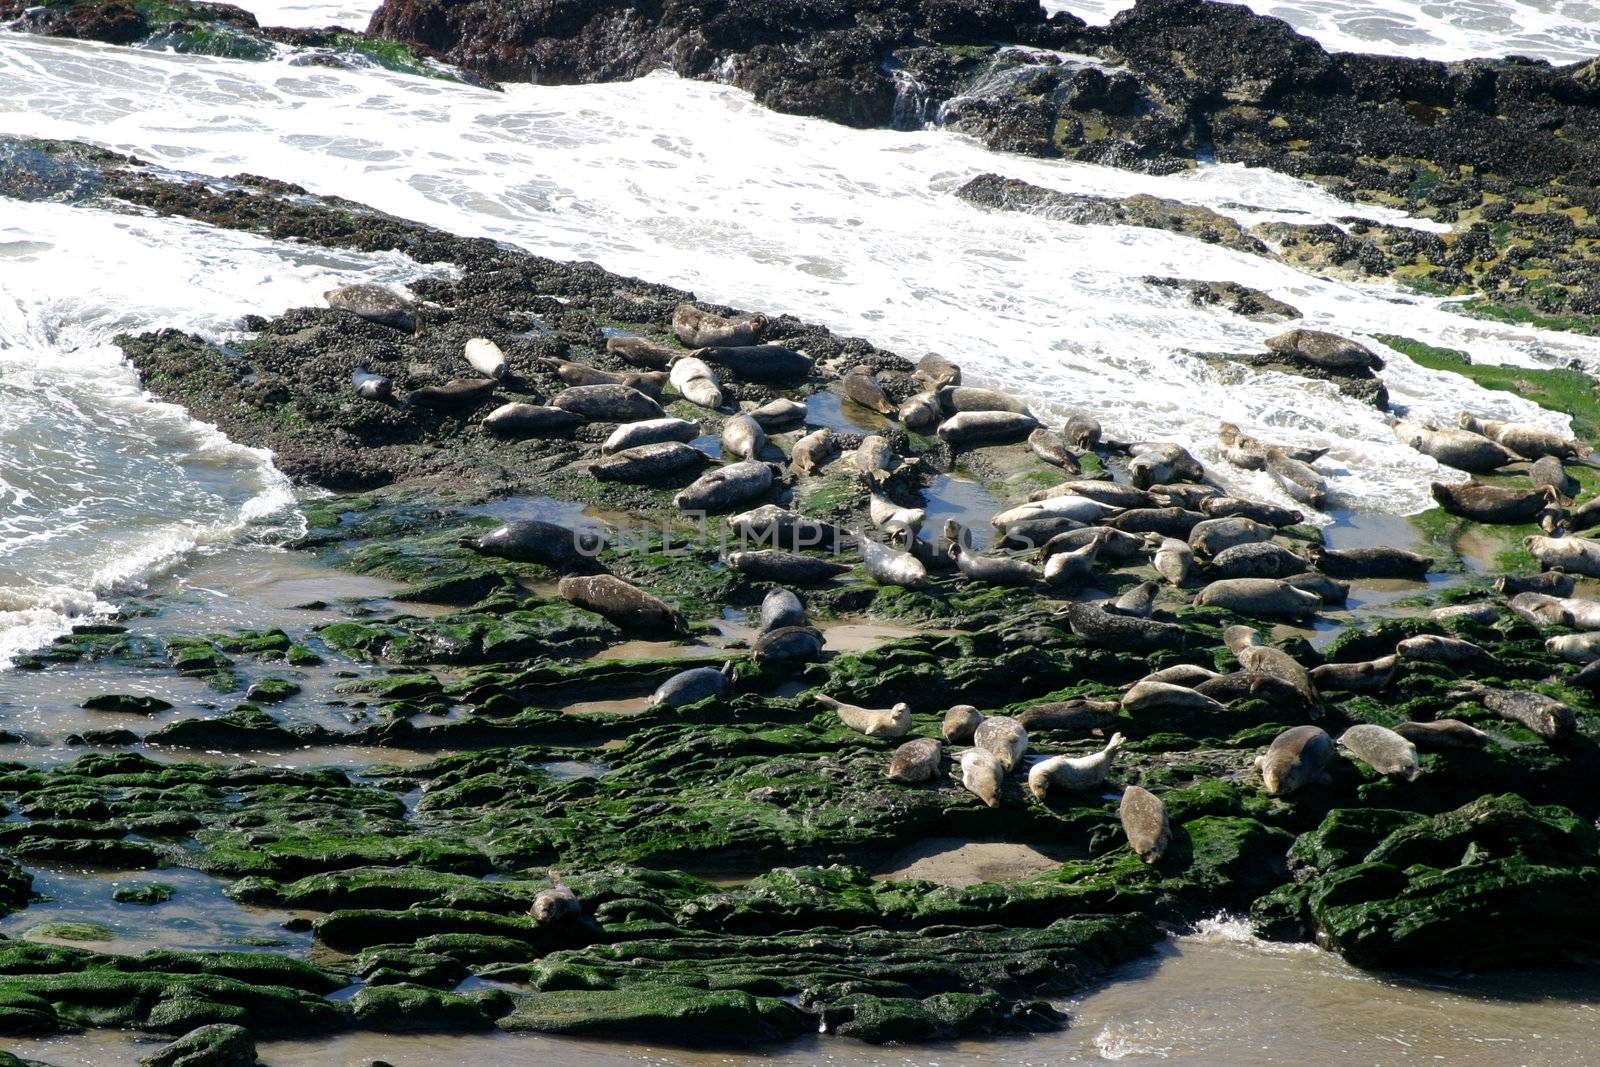 Seals at the coast at the Carpinteria Harbor Seal Rookery